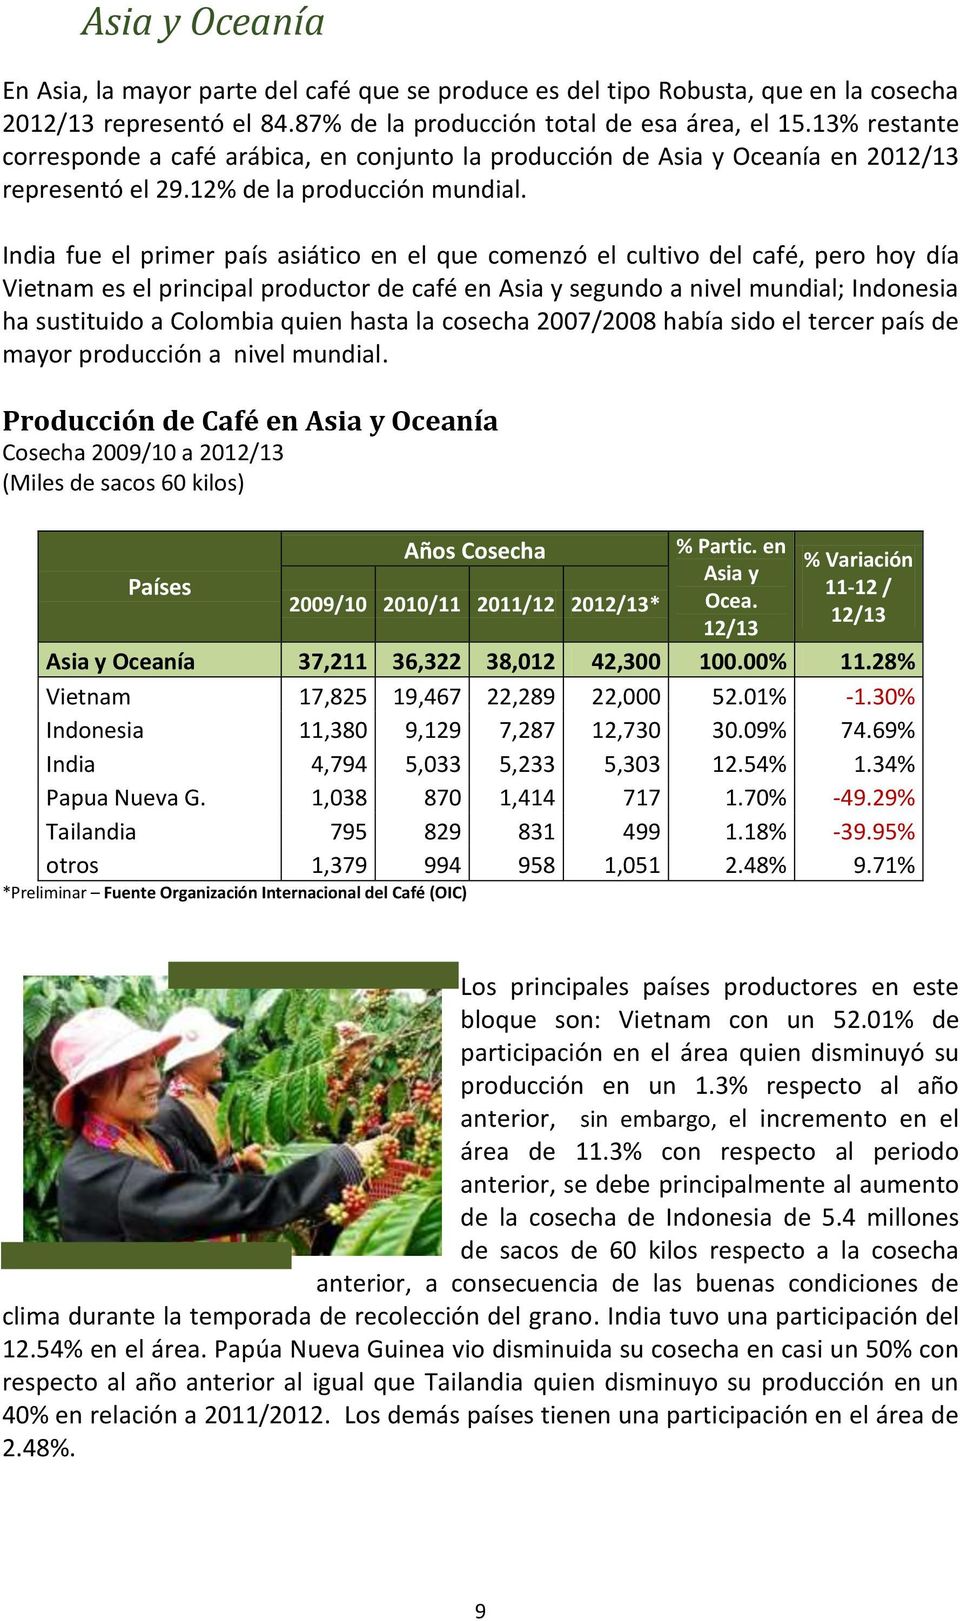 India fue el primer país asiático en el que comenzó el cultivo del café, pero hoy día Vietnam es el principal productor de café en Asia y segundo a nivel mundial; Indonesia ha sustituido a Colombia